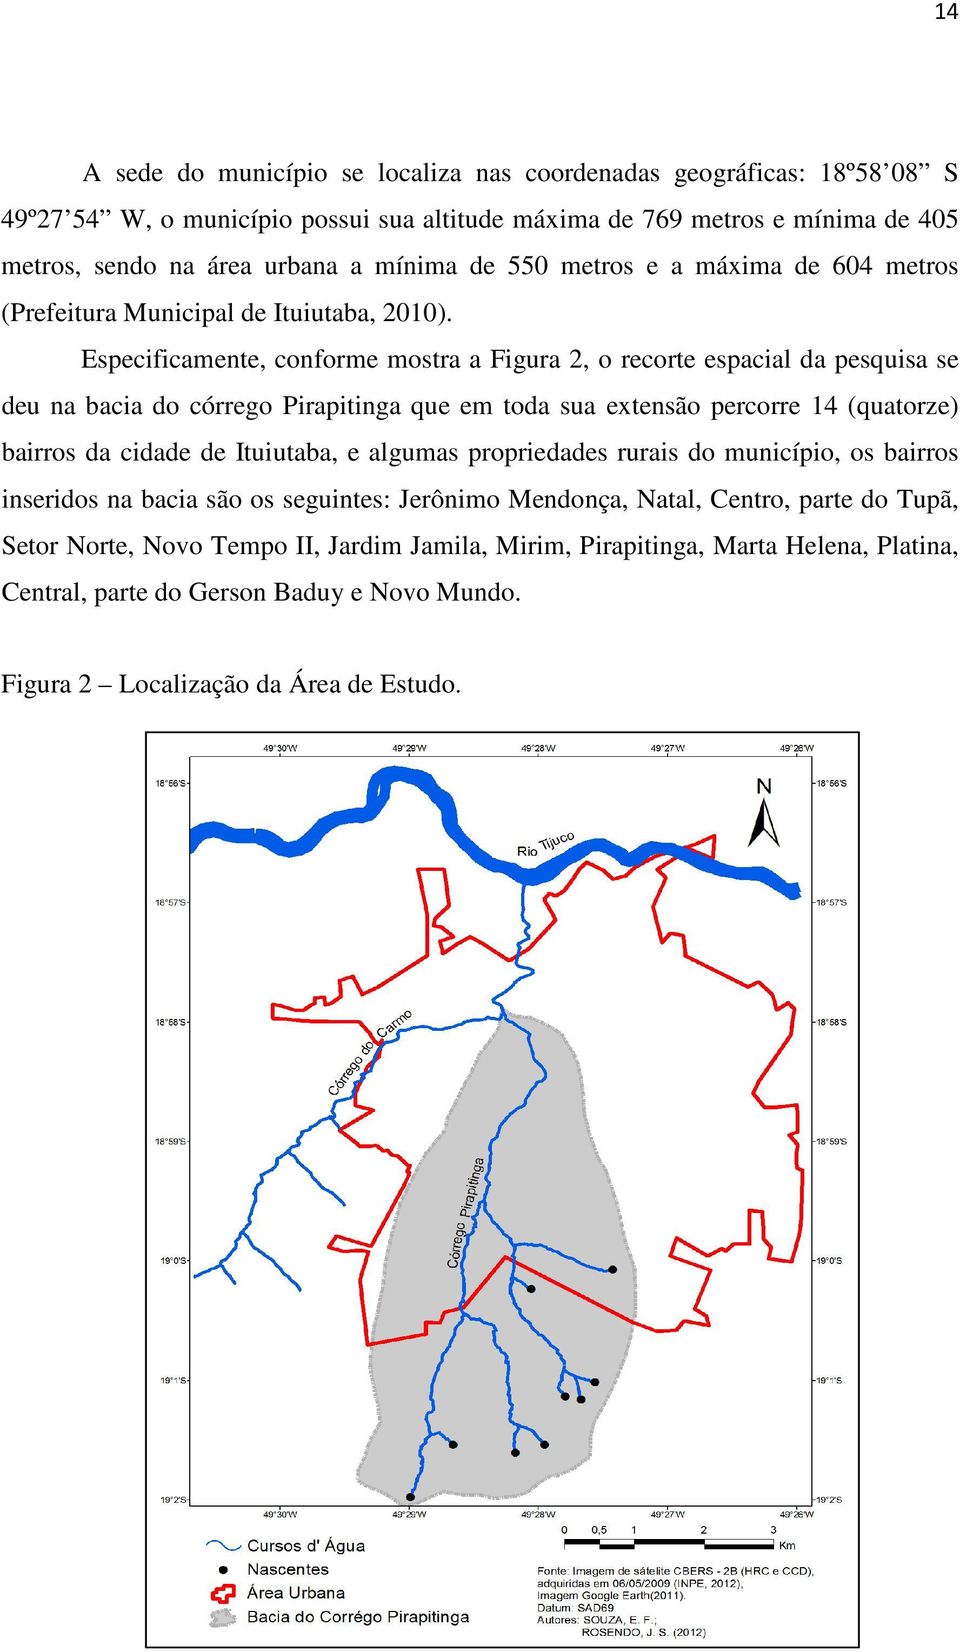 Especificamente, conforme mostra a Figura 2, o recorte espacial da pesquisa se deu na bacia do córrego Pirapitinga que em toda sua extensão percorre 14 (quatorze) bairros da cidade de Ituiutaba,